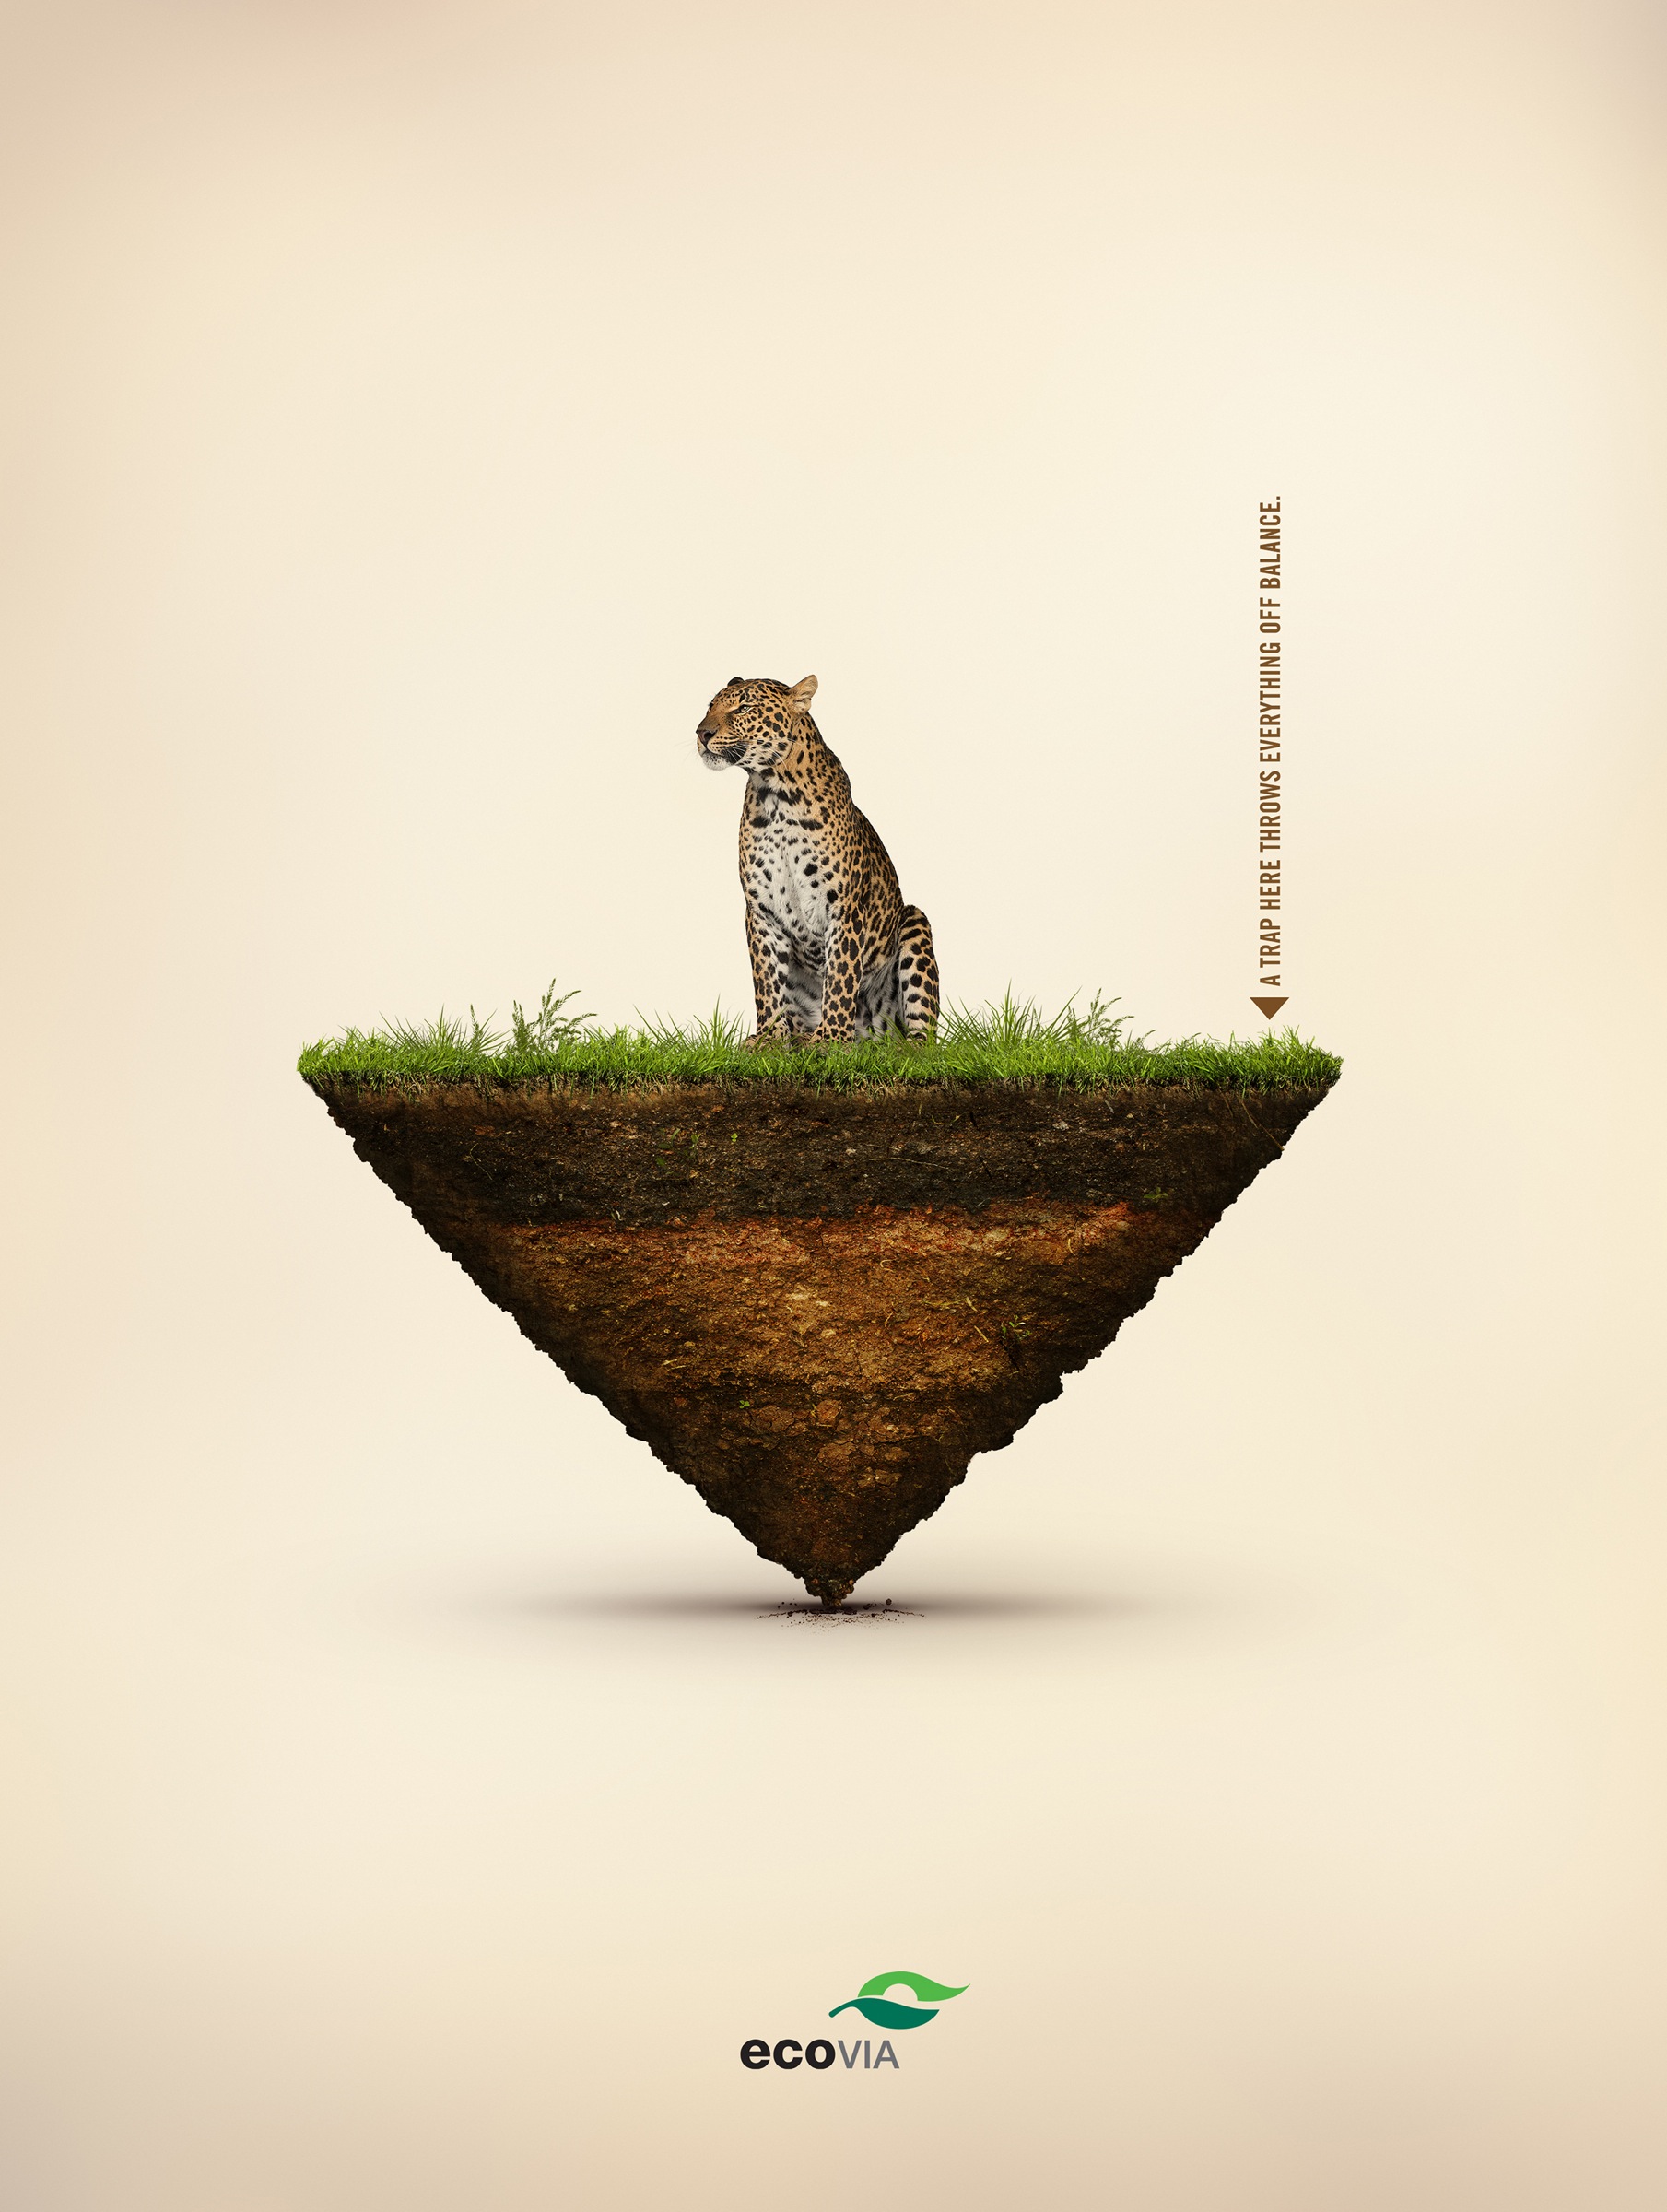 平衡的自然界-ecovia在人界公益平面广告